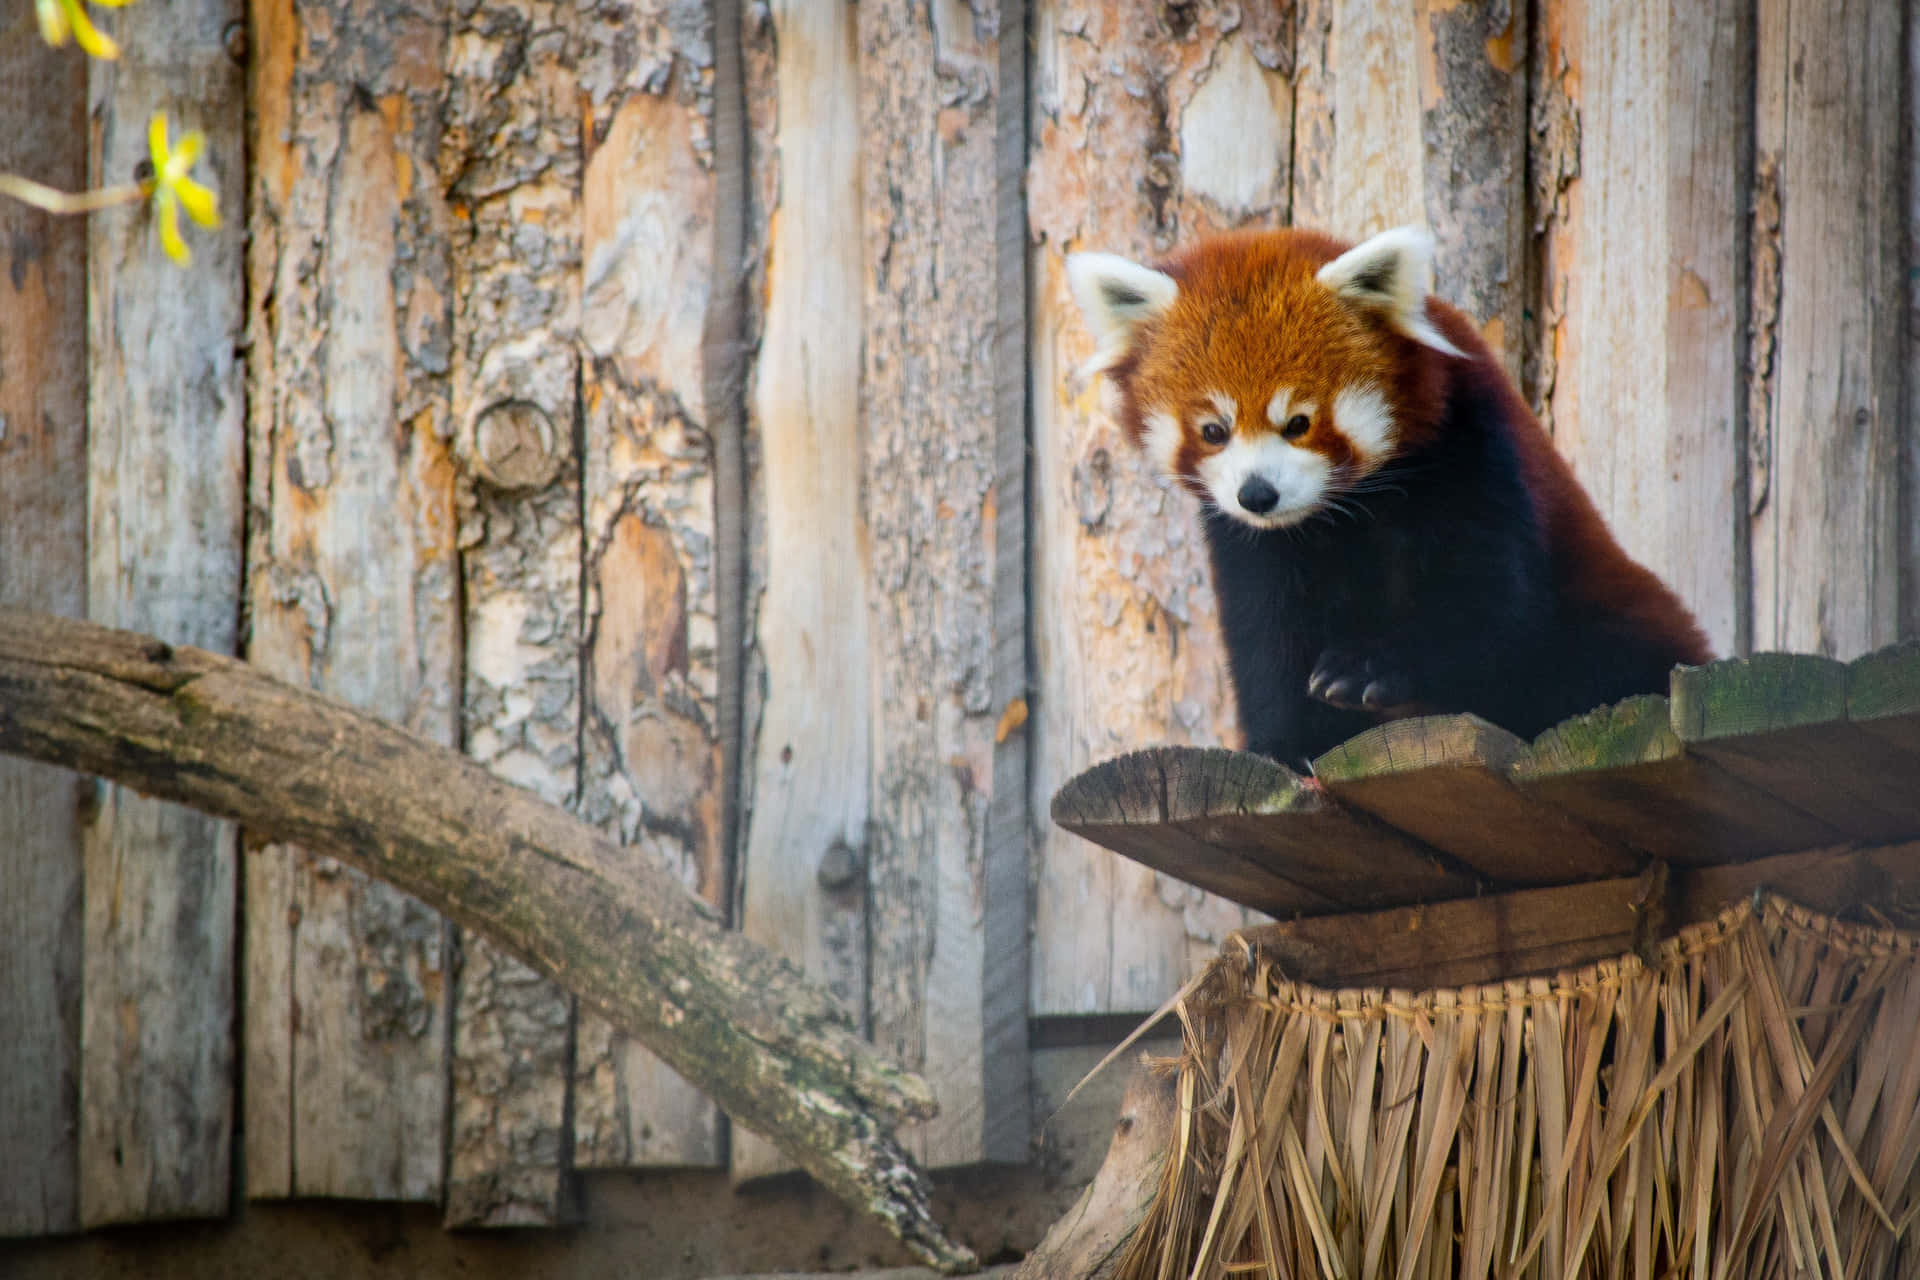 Billeder af røde pandaer skaber en levende atmosfære.